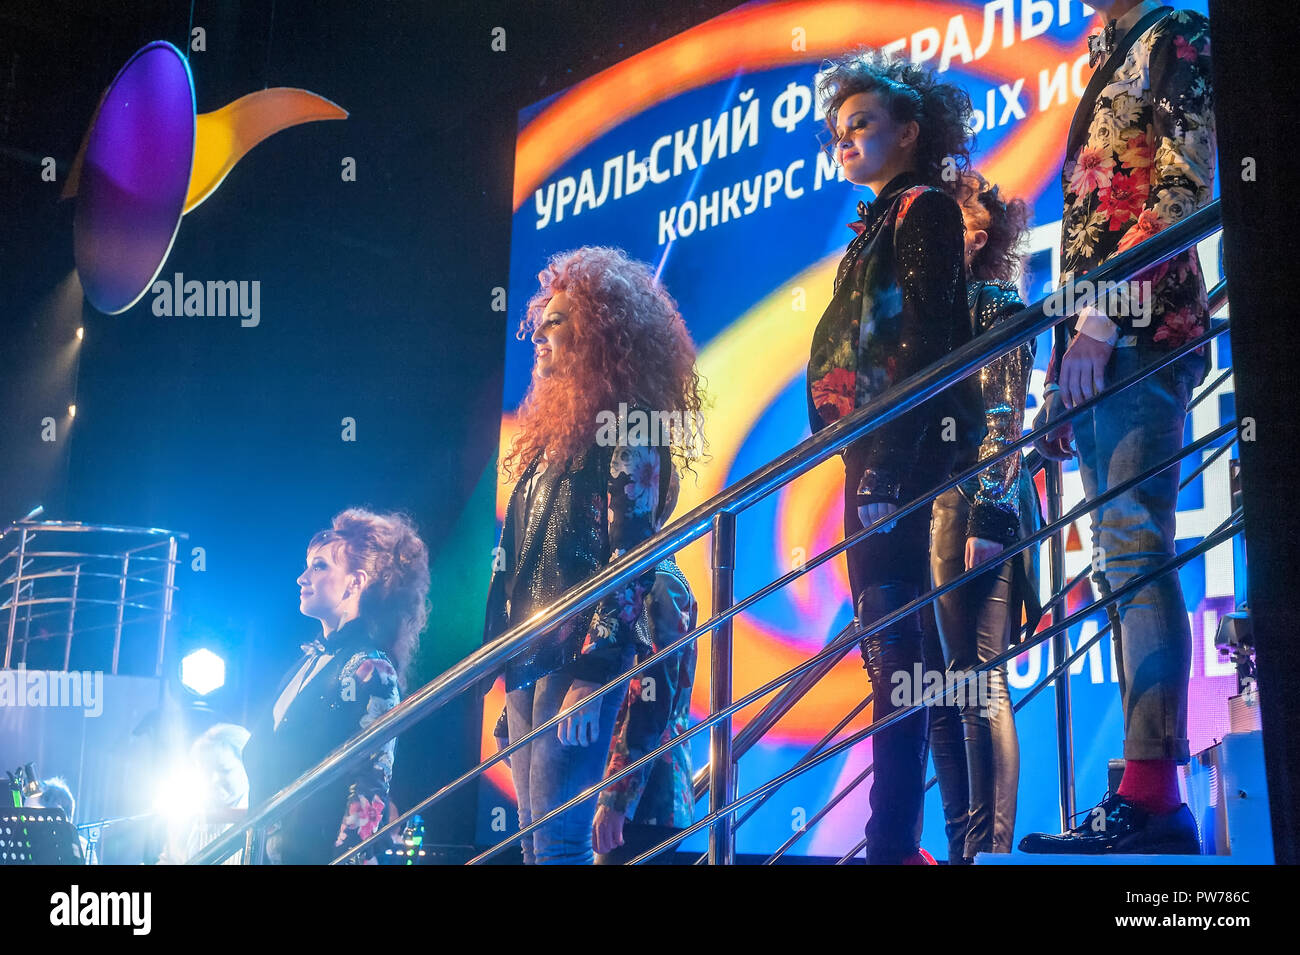 Tioumen, Russie - 16 Avril 2014 : La concurrence des jeunes artistes la chanson ne connaît pas de limite dans le théâtre dramatique. Belle chanteuses chantant une chanson Banque D'Images